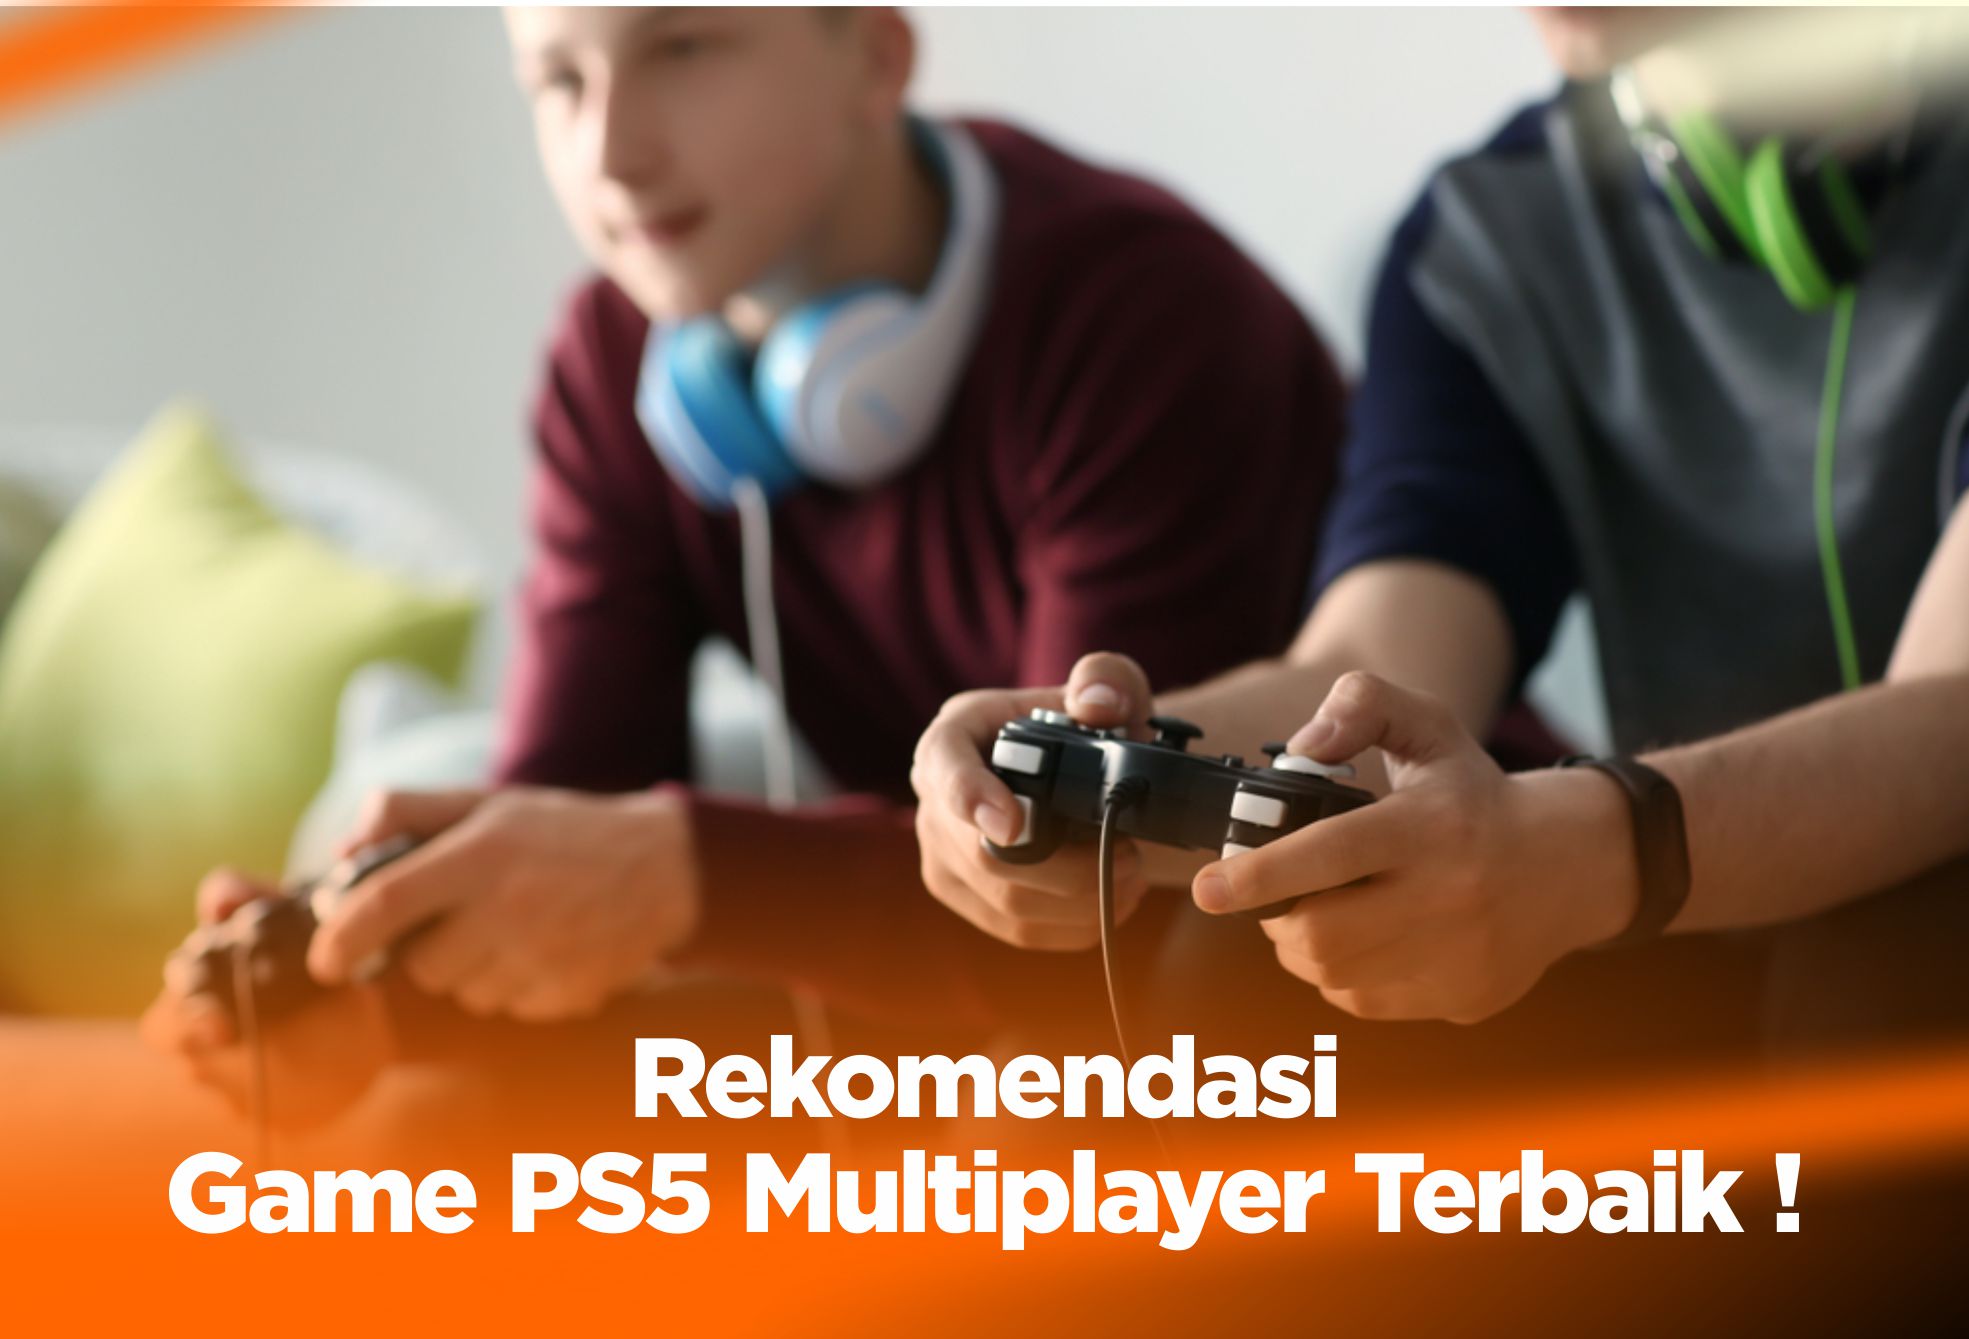 10 Rekomendasi Game PS5 Multiplayer Offline Terbaik !